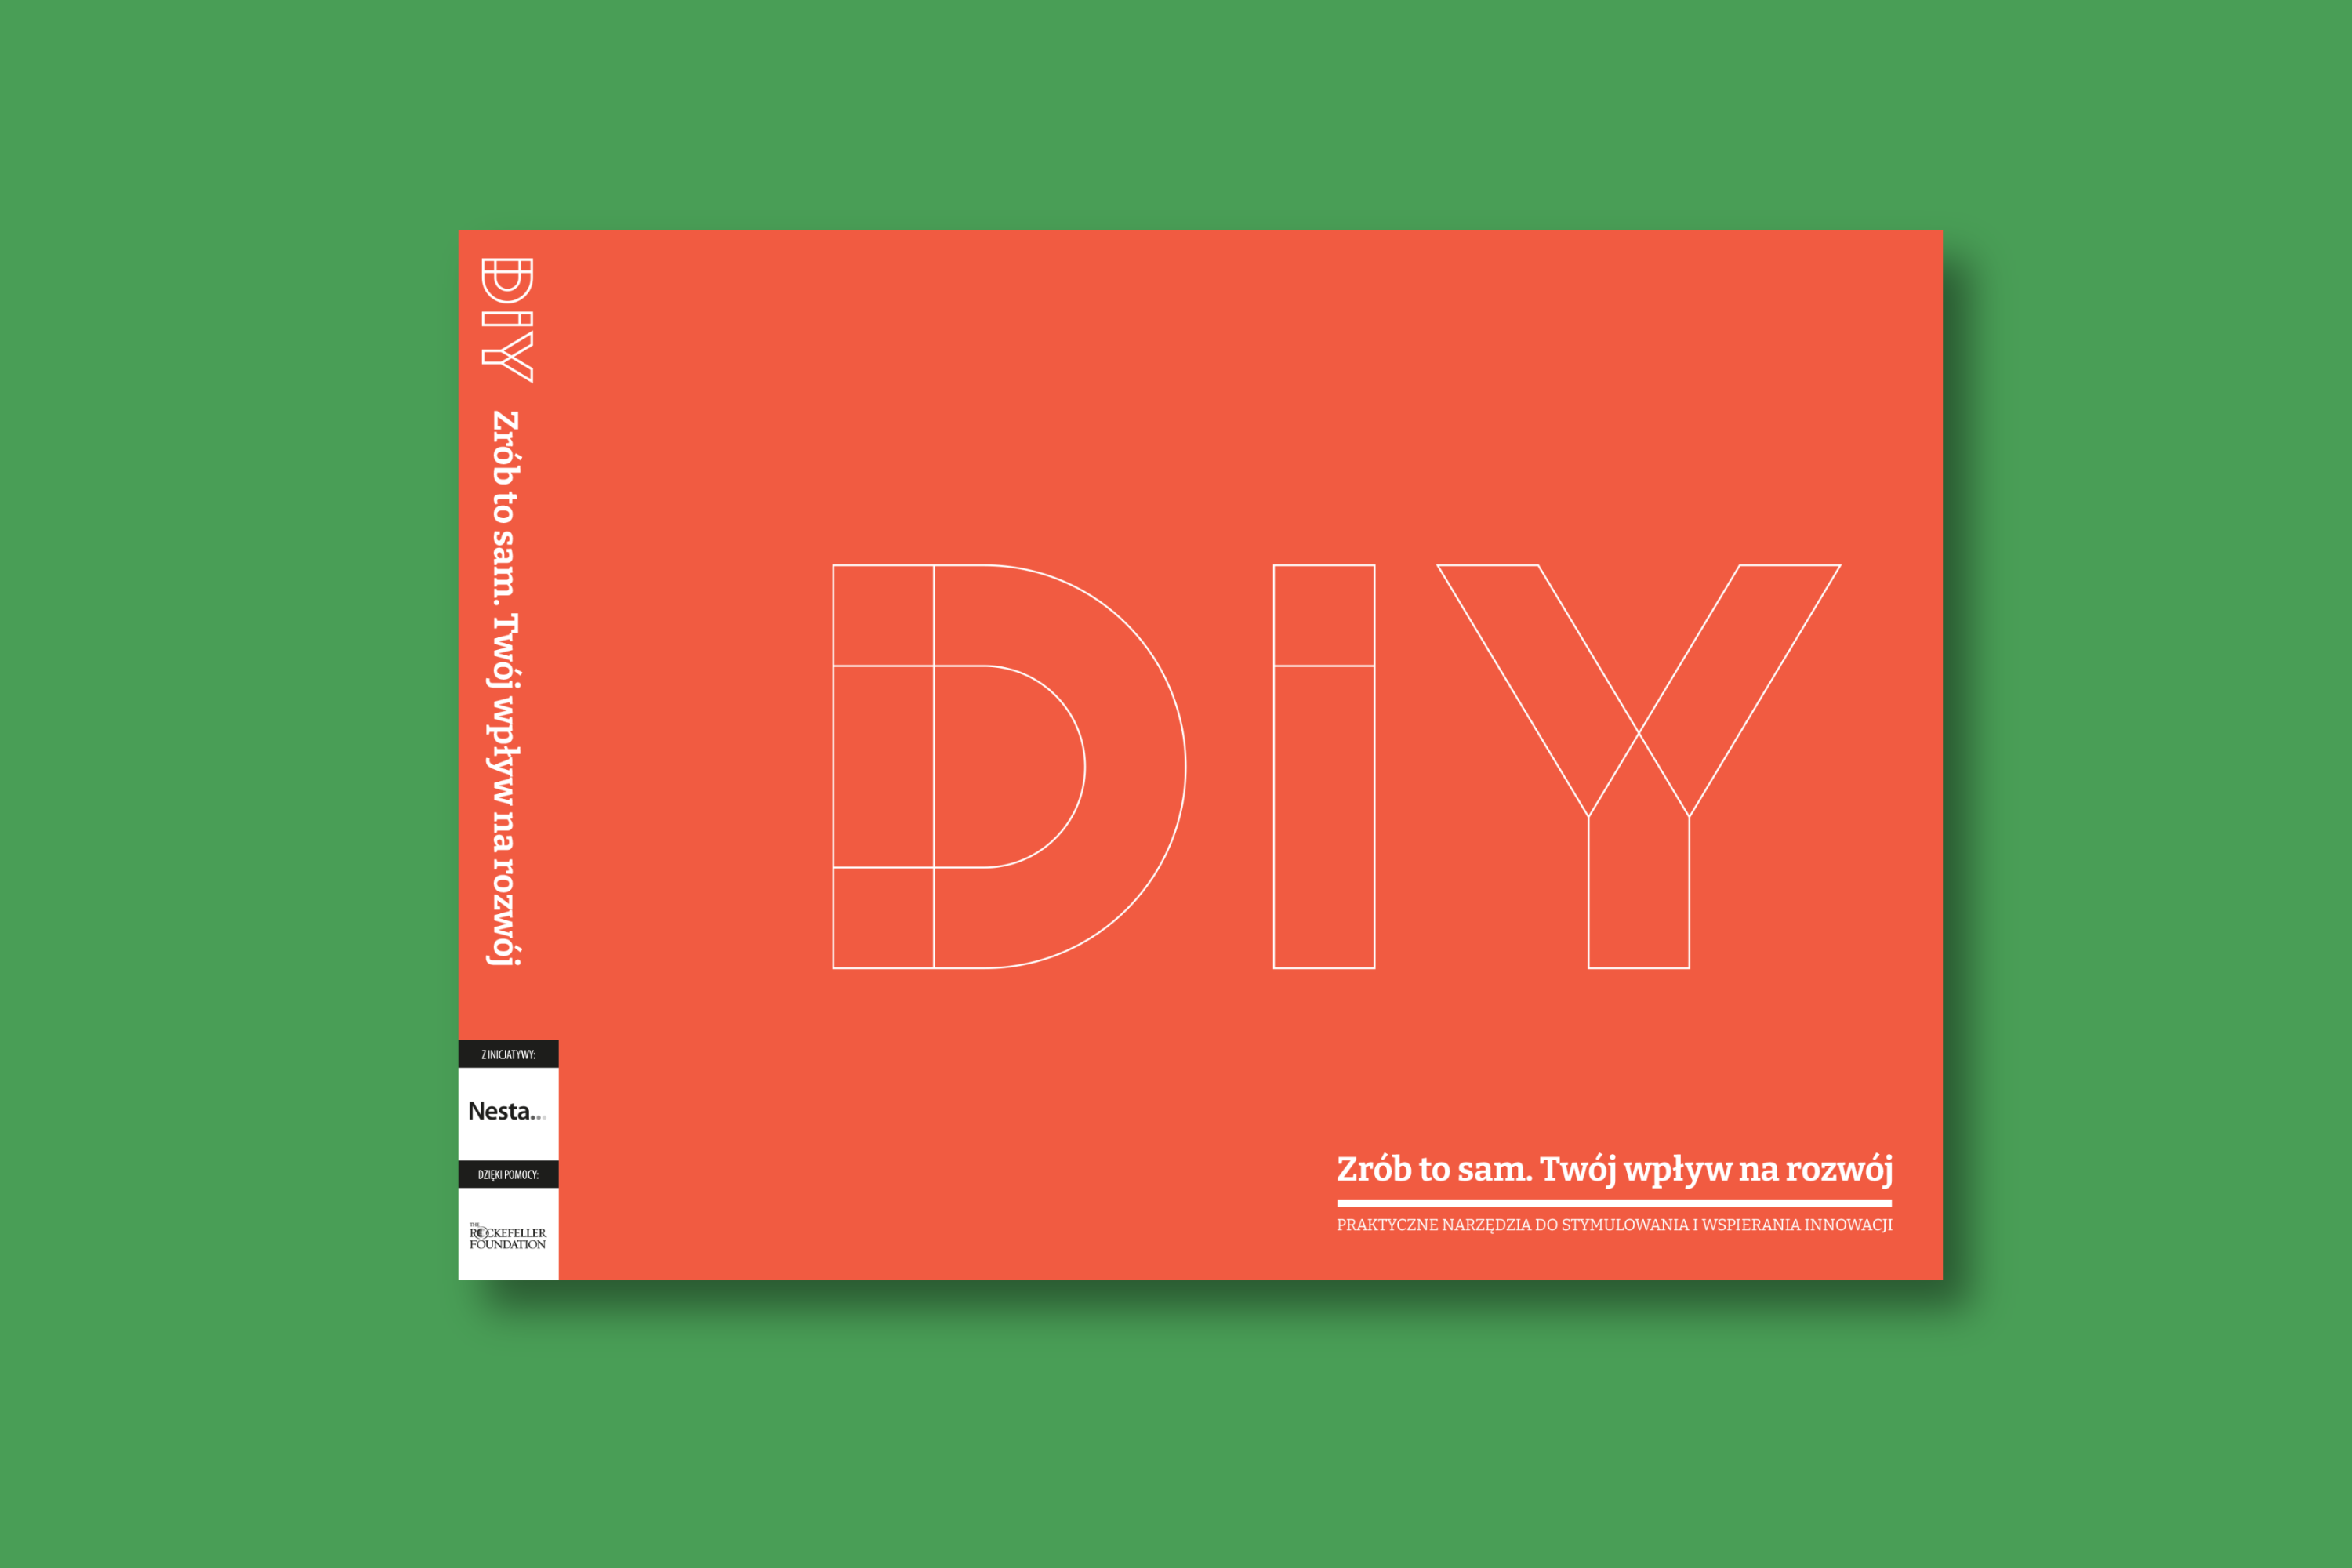 Obrazek przedstawia okładkę publikacji " Zrób to sam. Twój wpływ na rozwój" - poziomą ceglasto pomarańczową z dużym napisem "DIY".